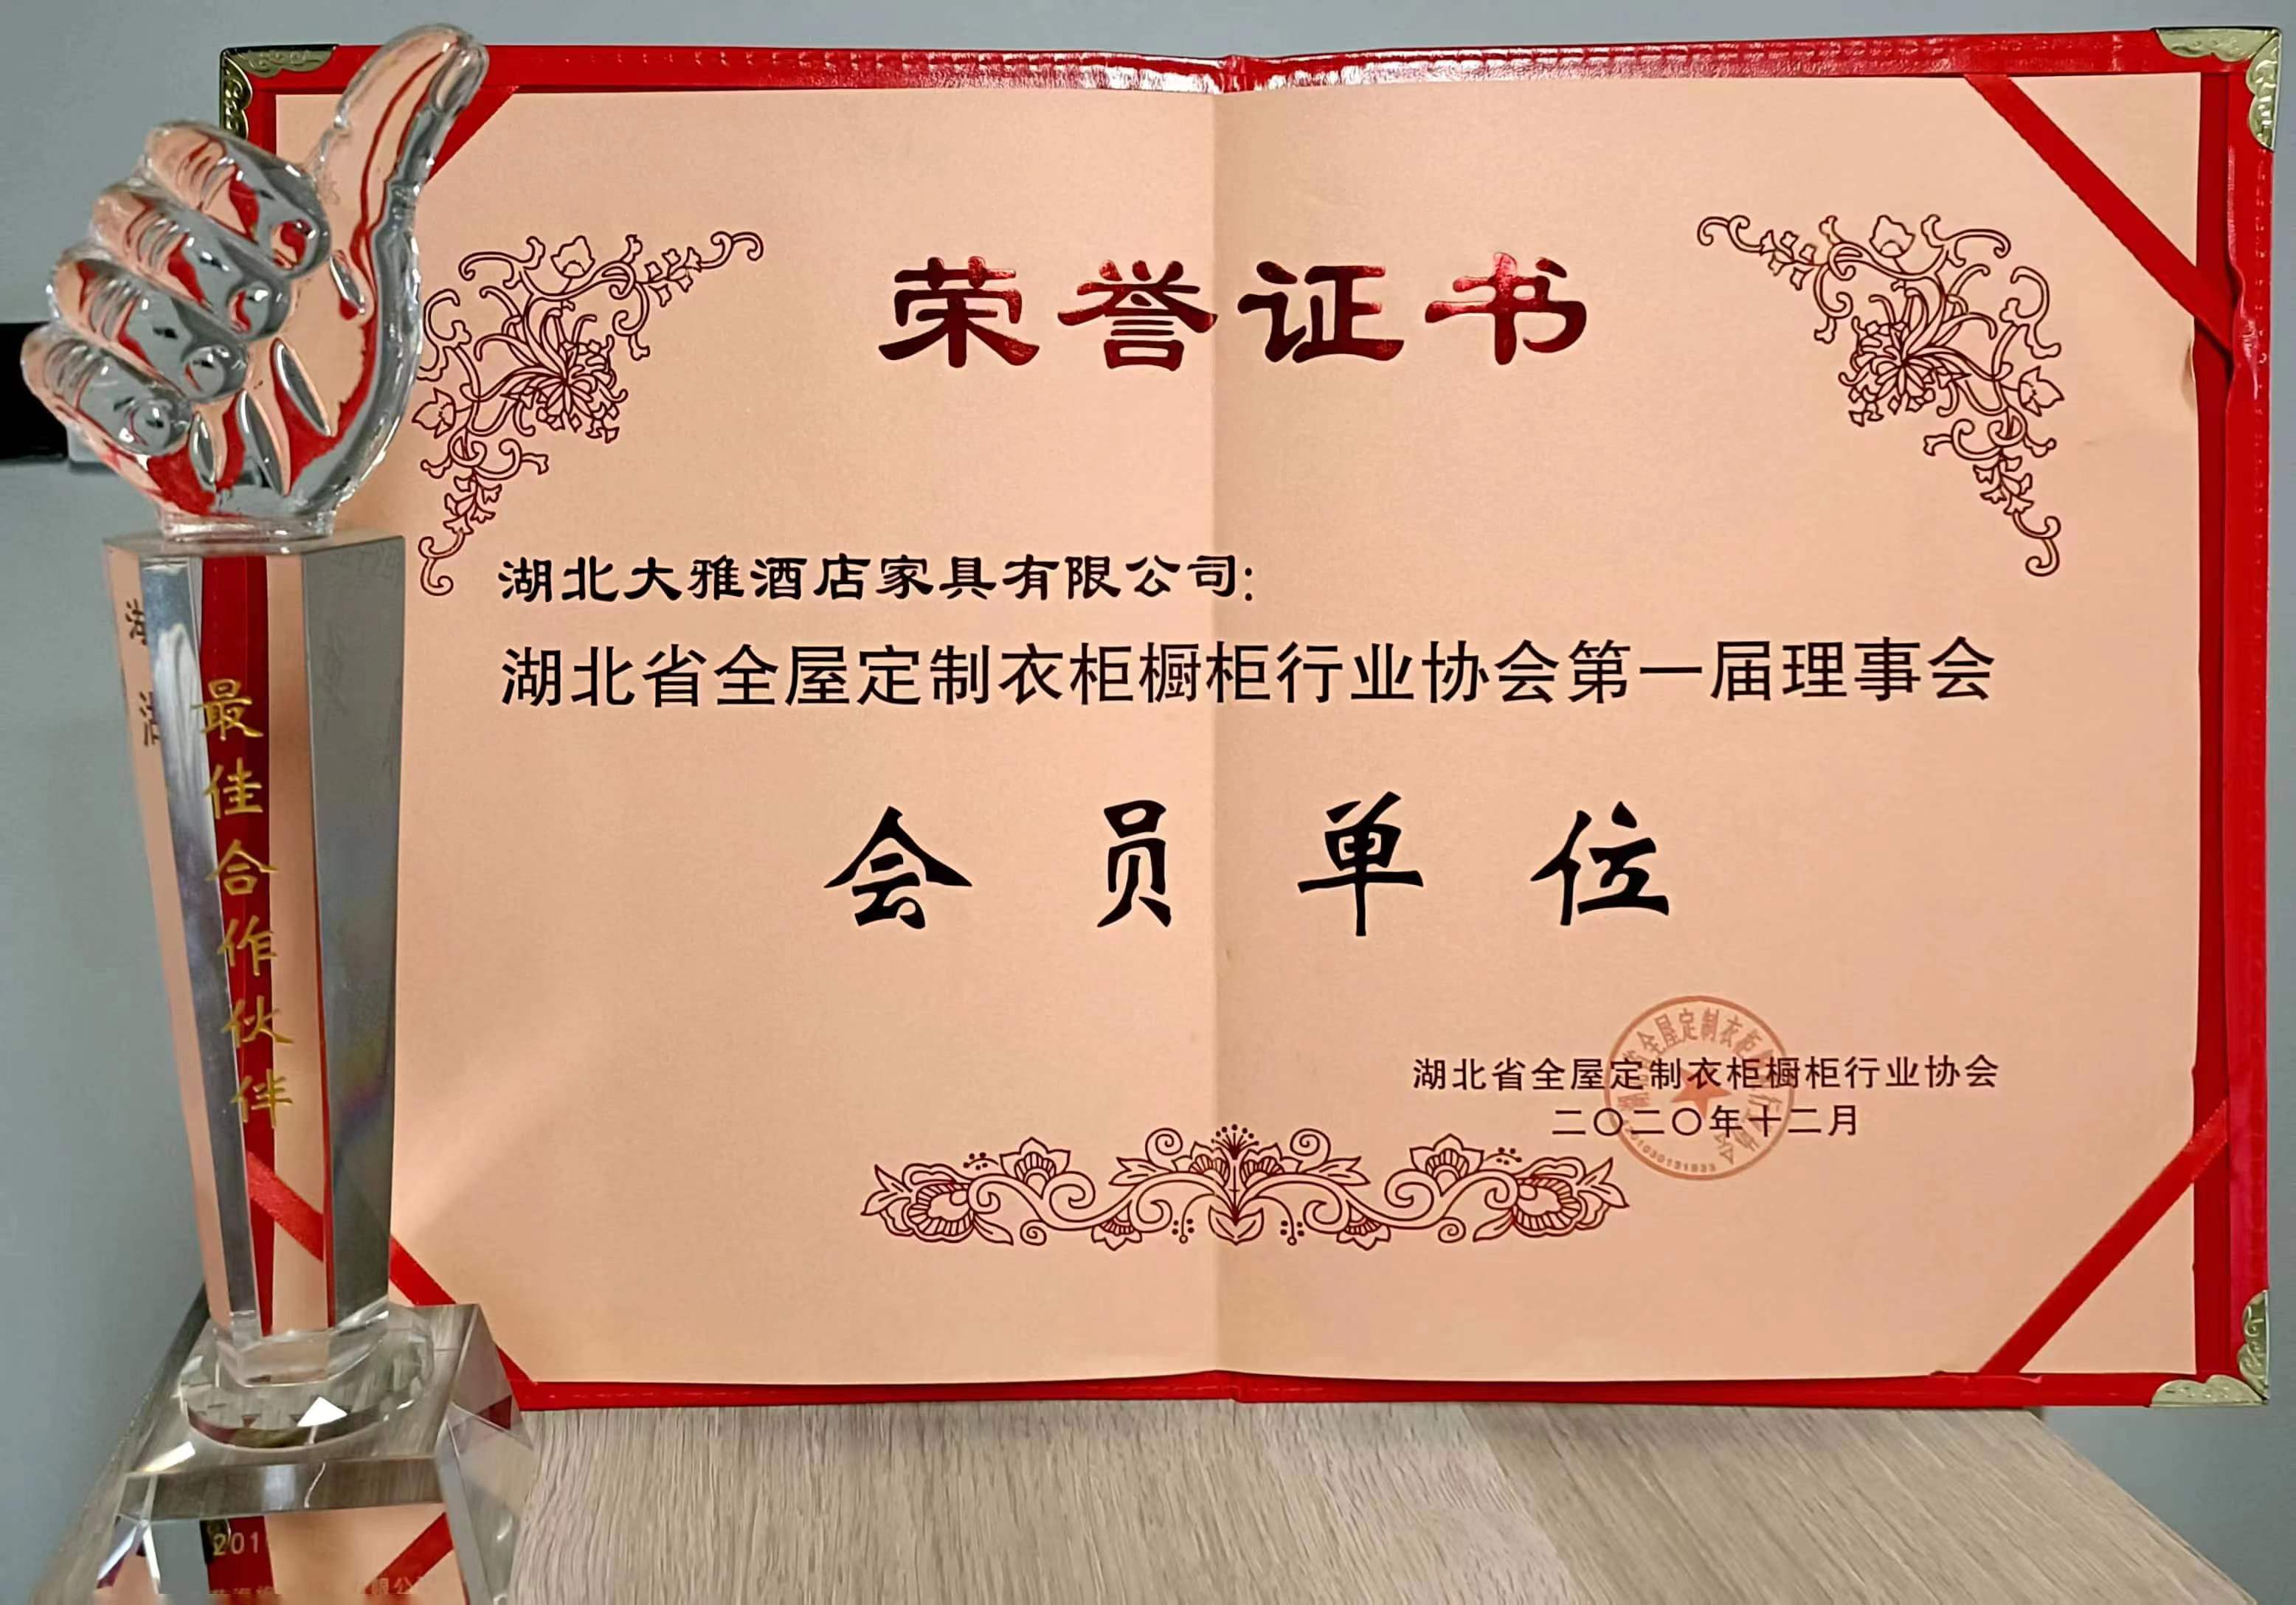 湖北省全屋定制衣柜橱柜行业协会第一届理事会会员单位